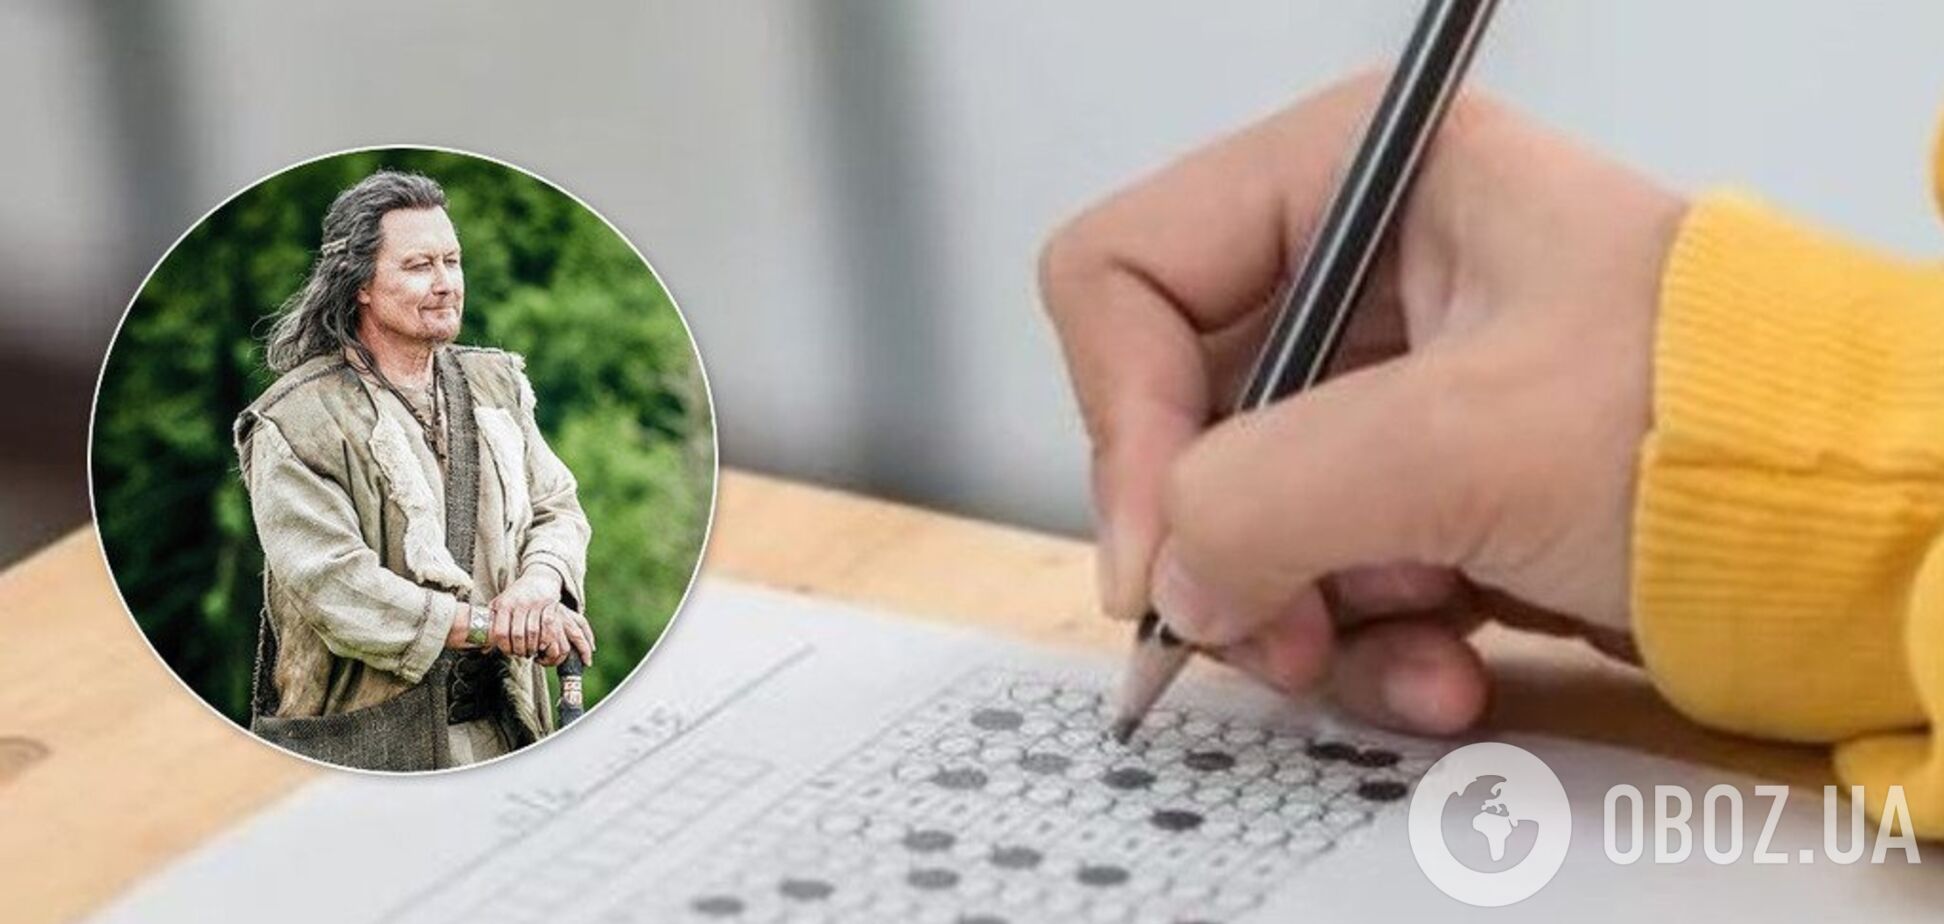 ЗНО-2020: вчителька розповіла, чи допоможе фільм 'Захар Беркут' скласти тестування